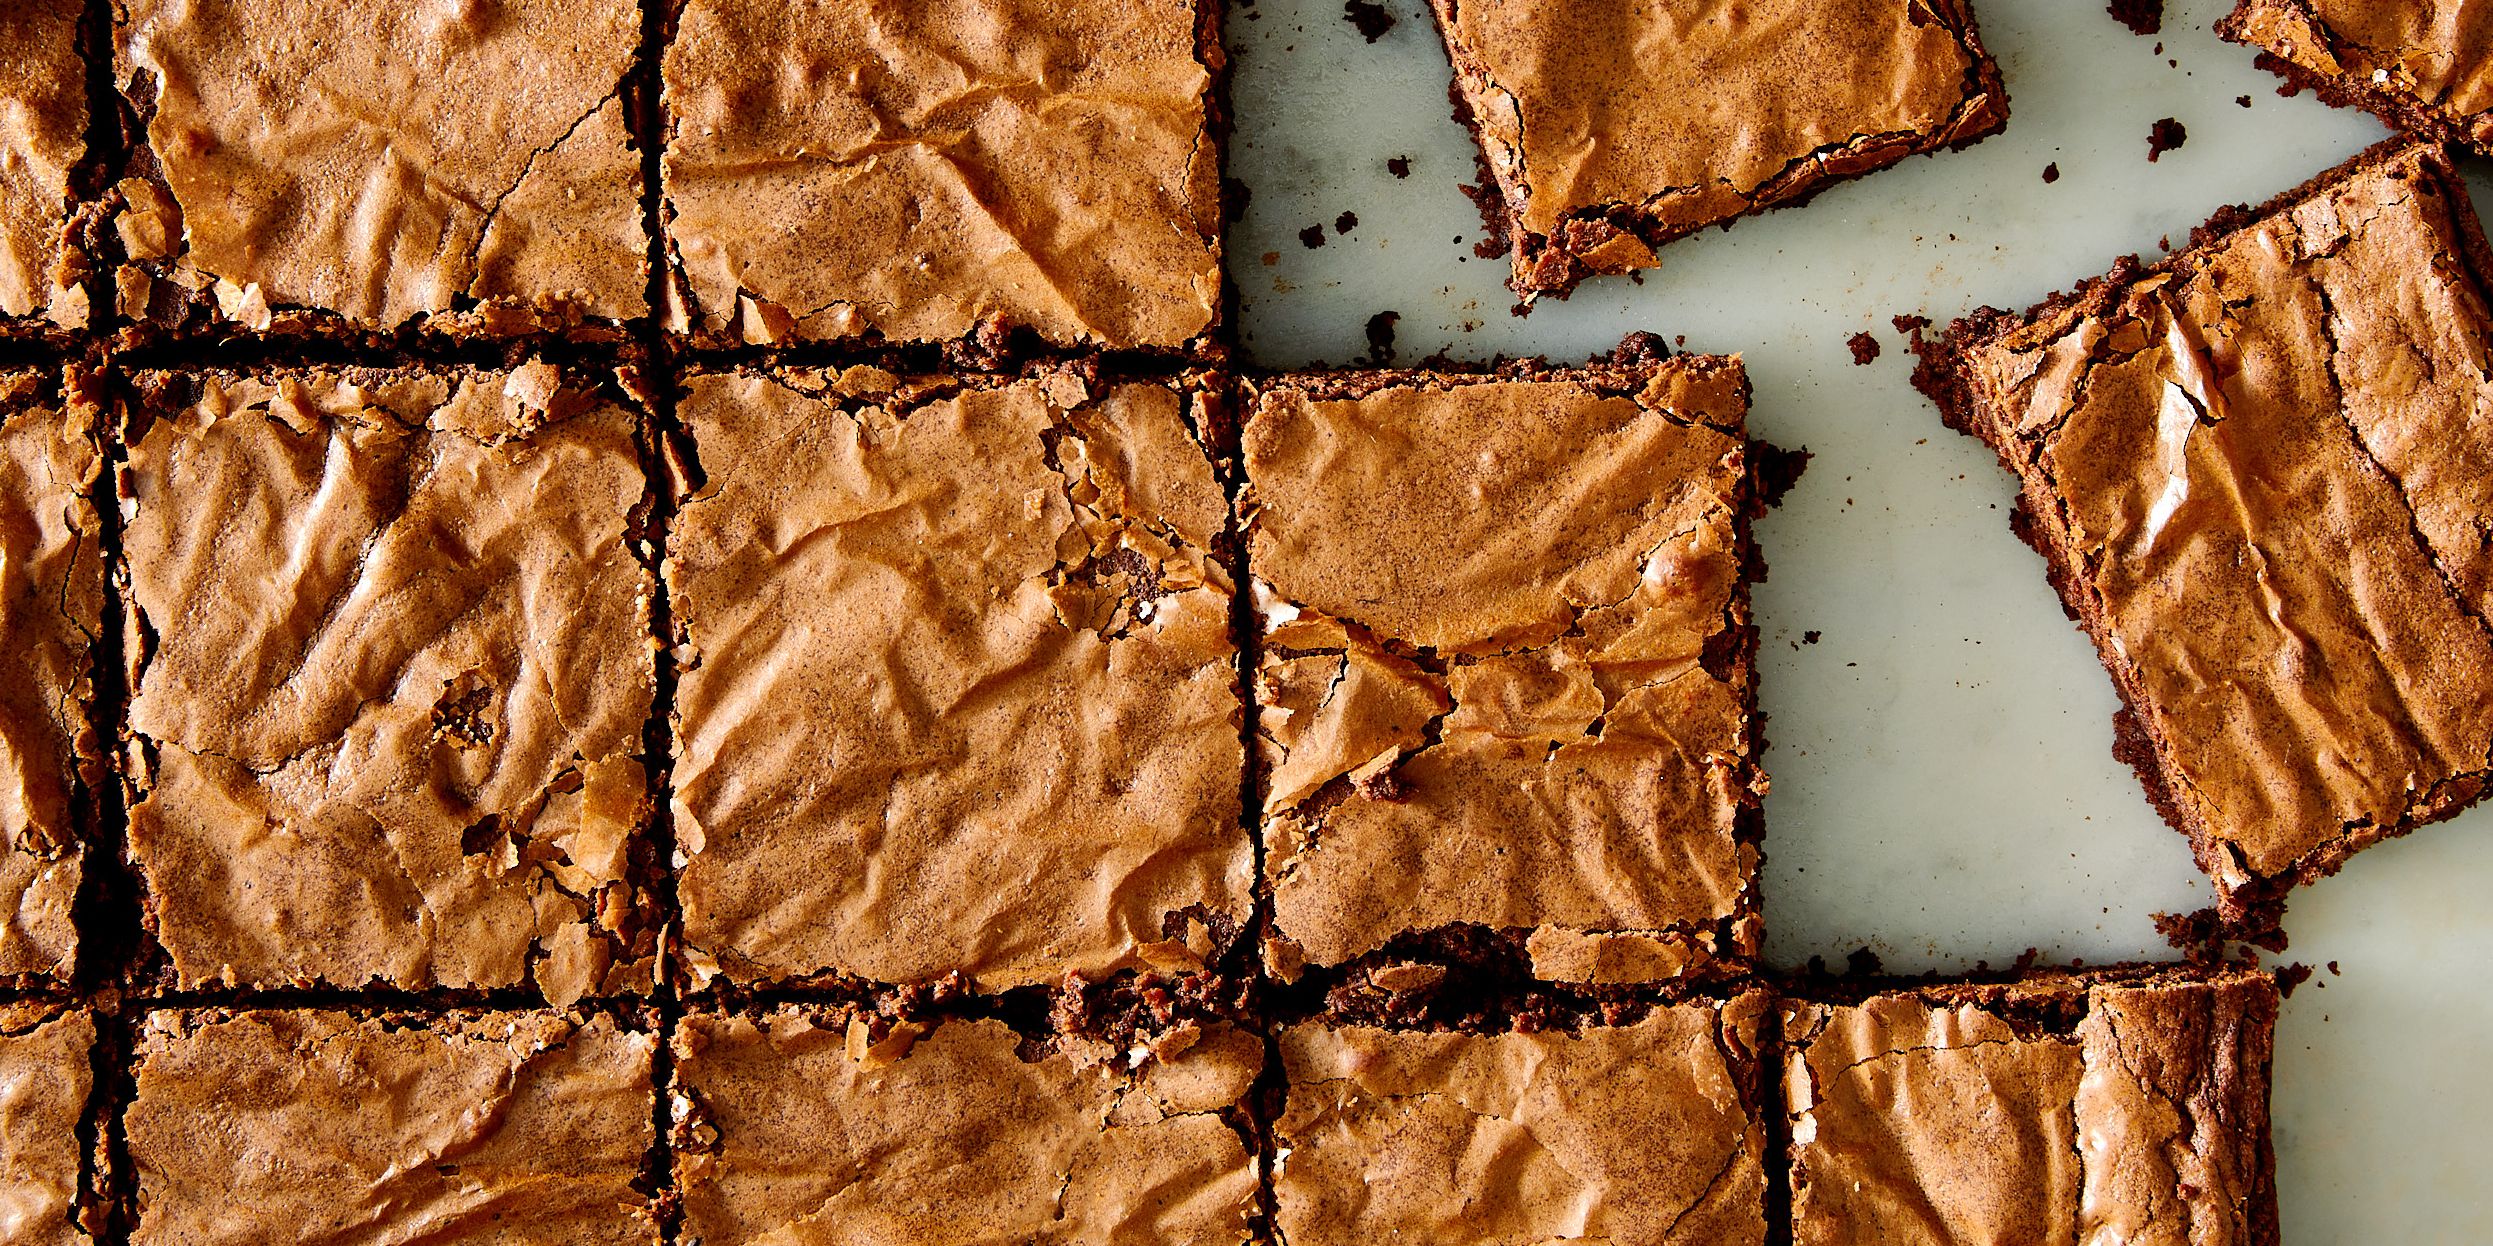 2-Ingredient Brownies and the Best Brownie Pan on